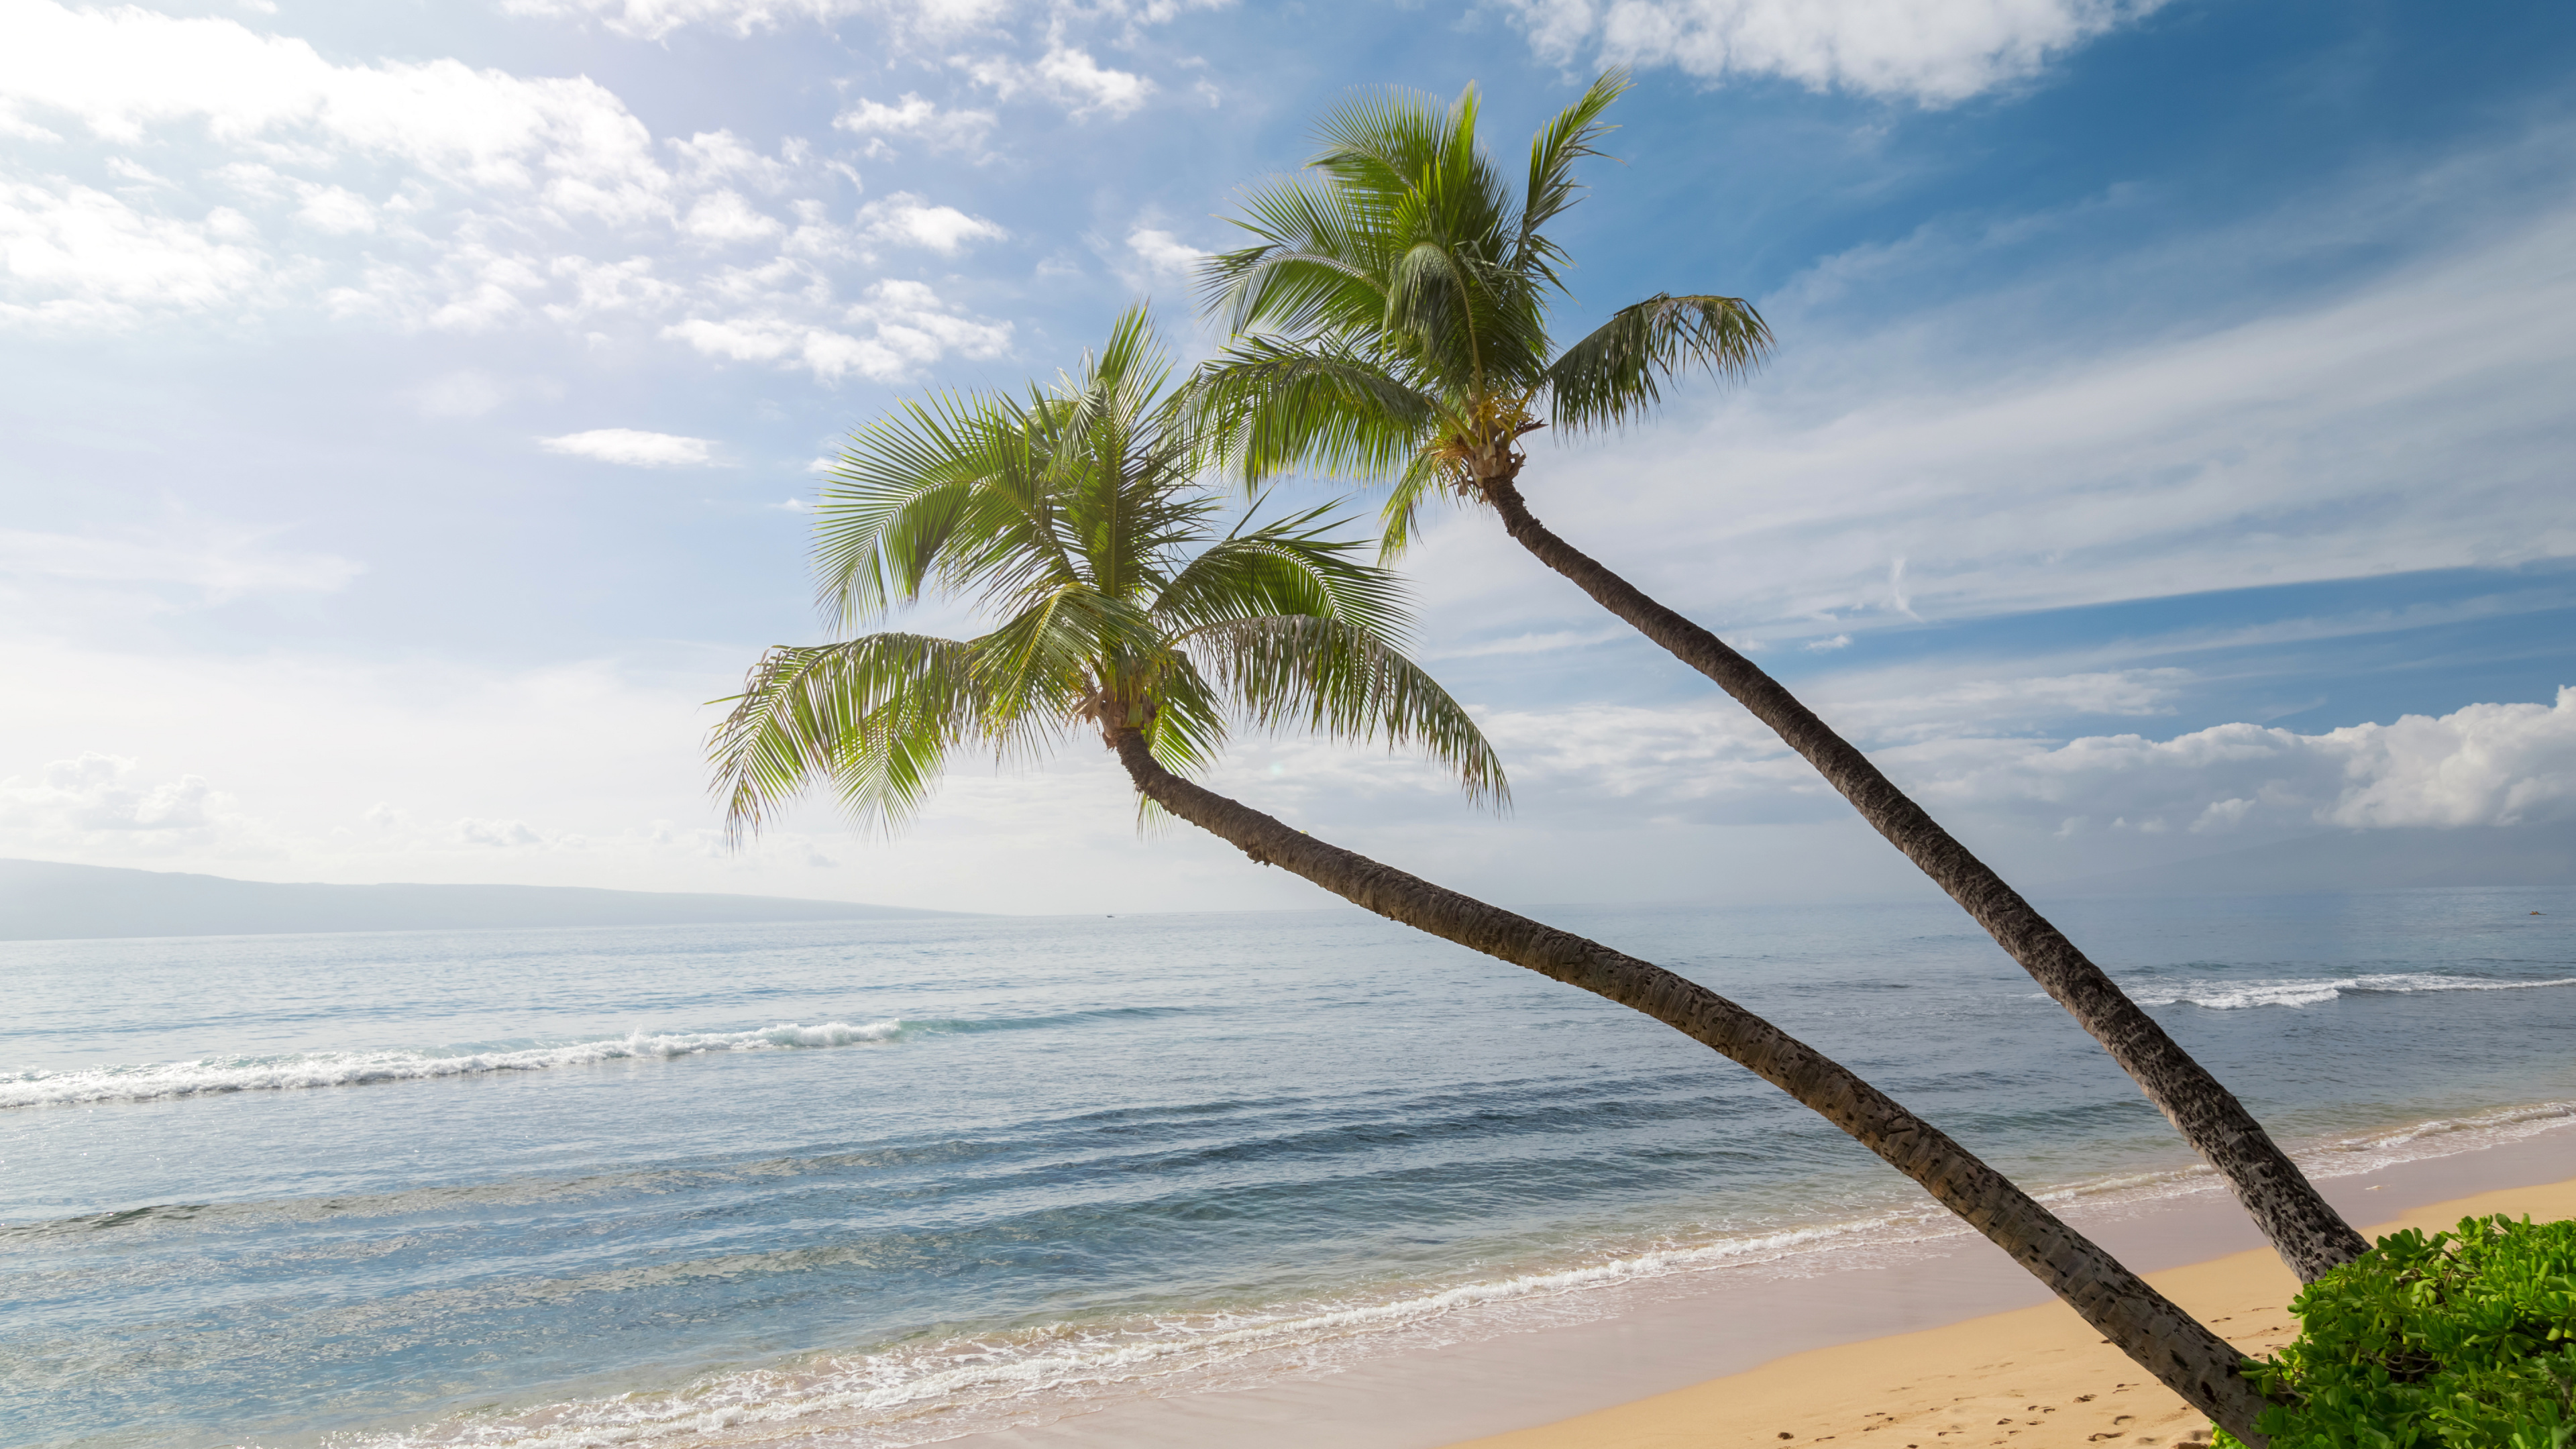 棕榈树, 夏威夷, 海岸, 海洋, 性质 壁纸 3840x2160 允许